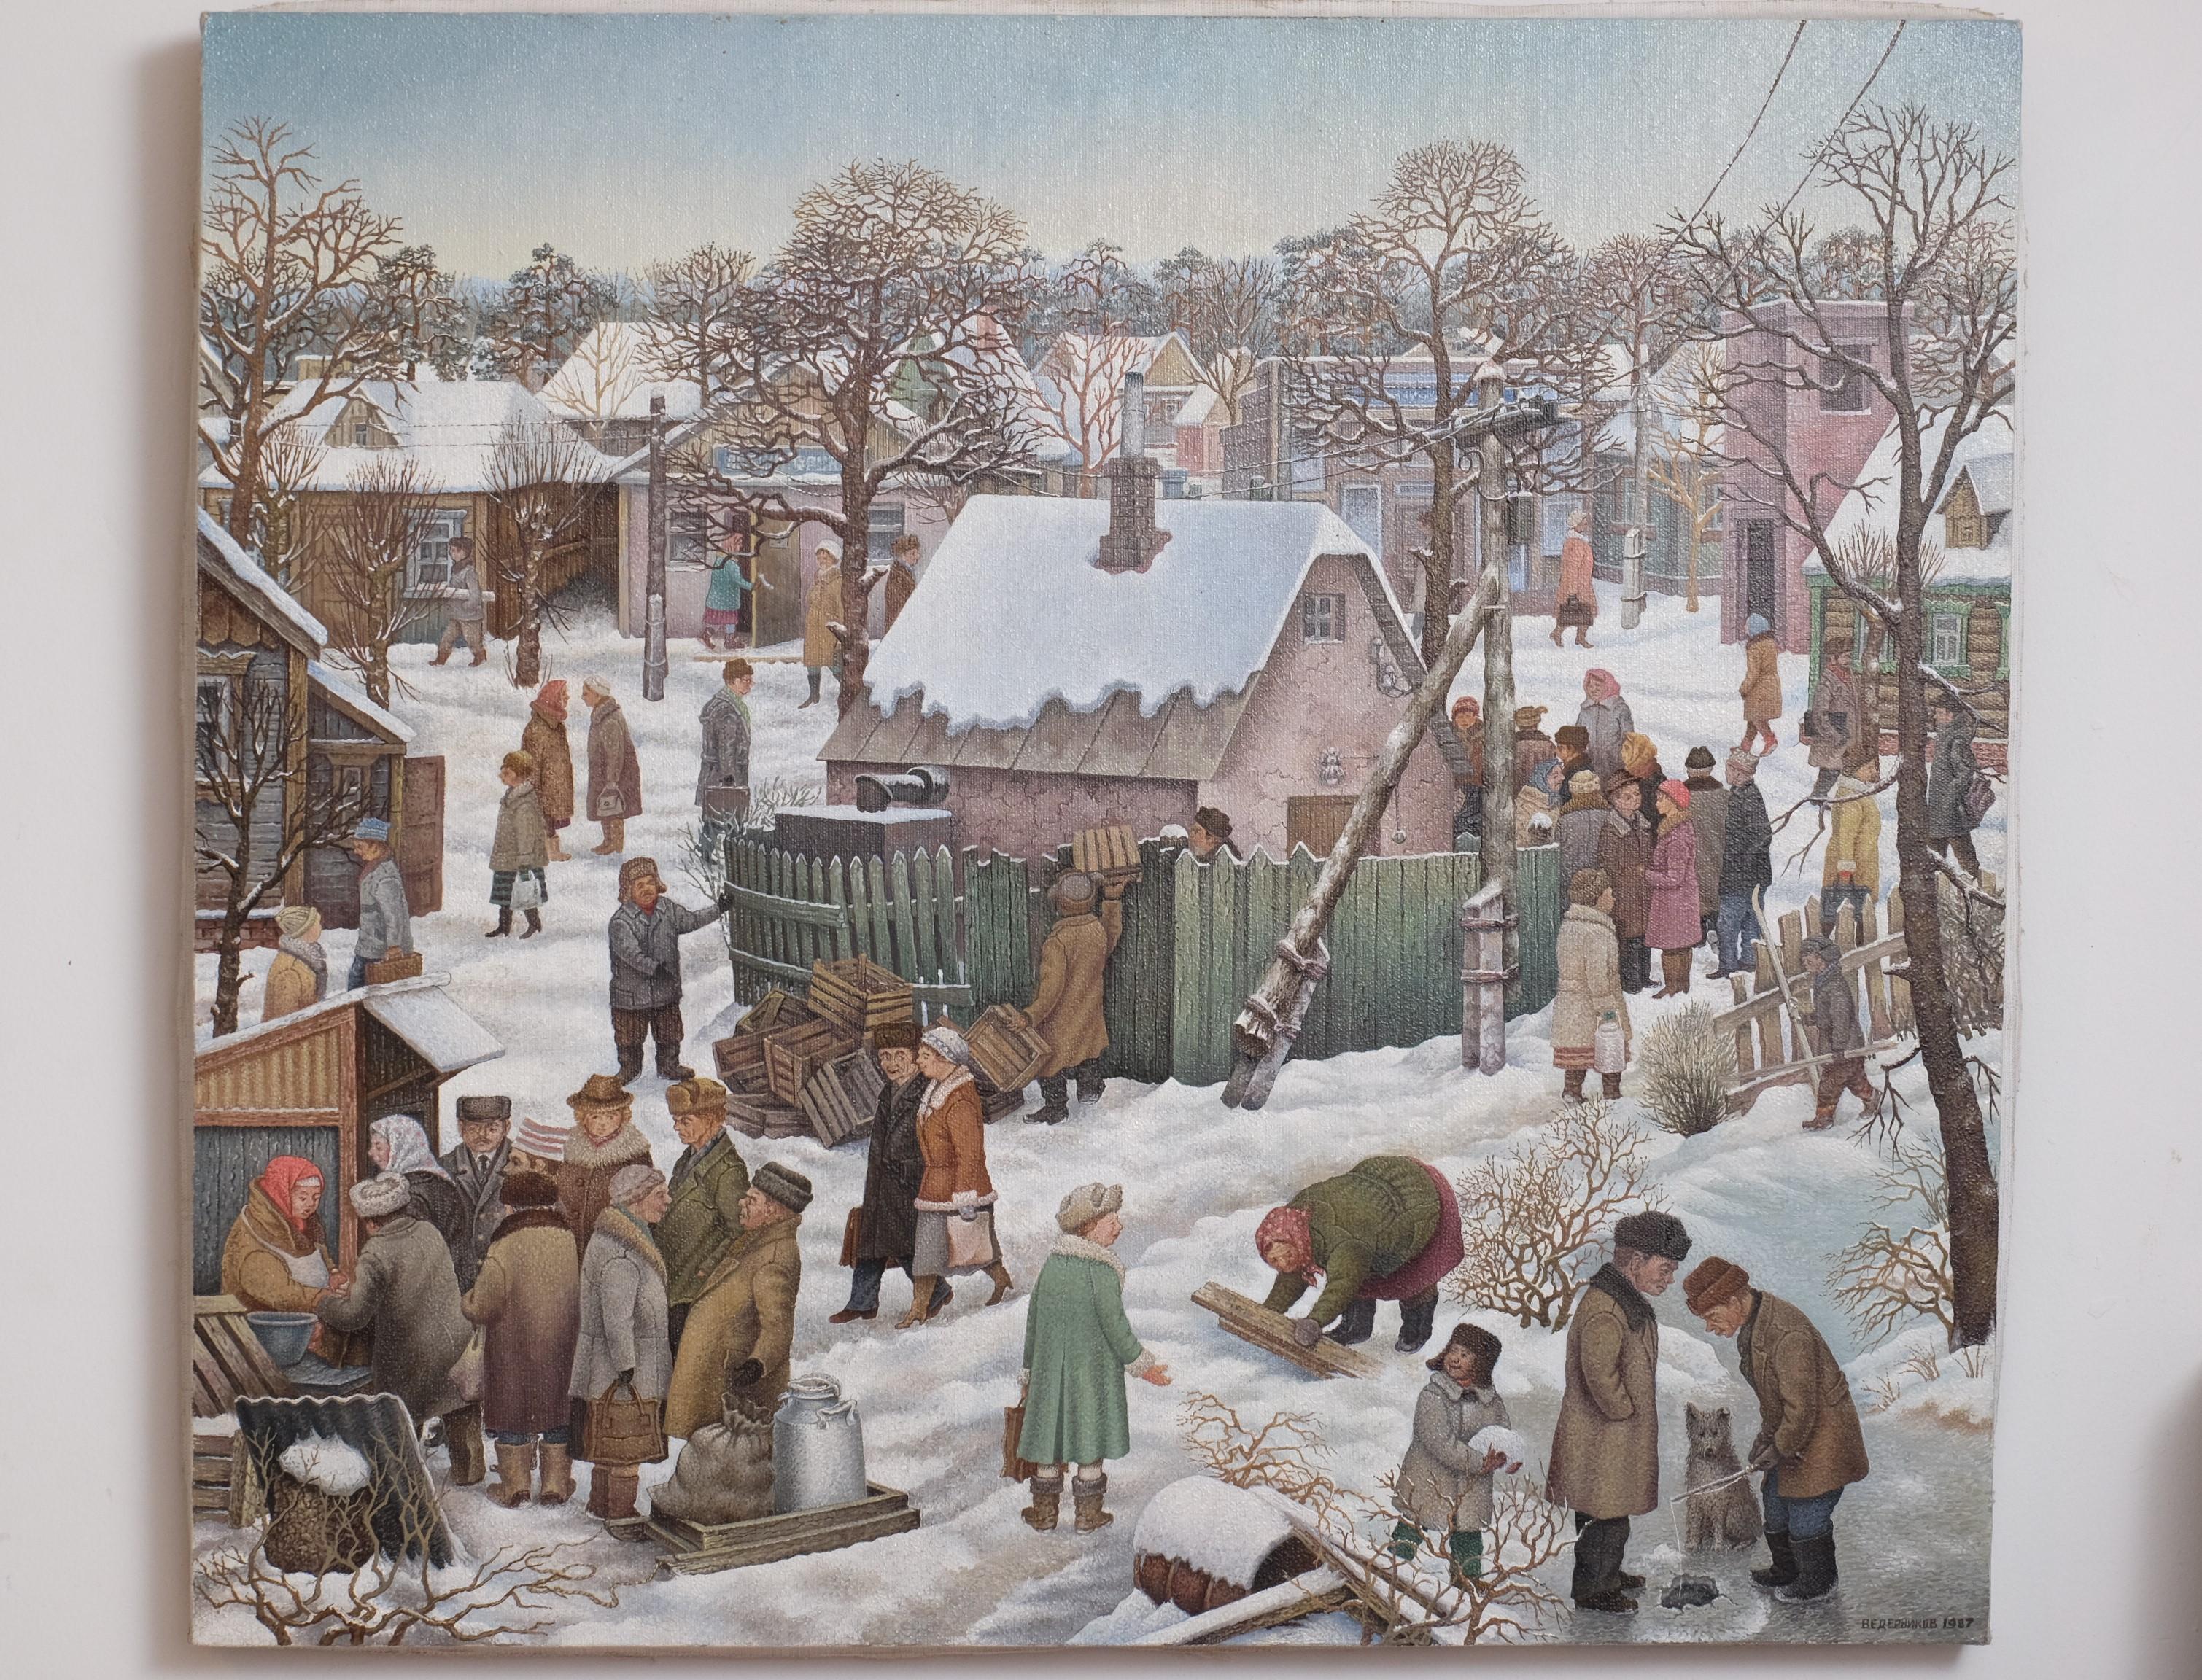 Peinture à l'huile sur toile de Julij Anatolevic VEDERNIKOV. Signé et daté (1987).

Riche représentation d'un paysage de village hivernal en Russie. L'agitation du marché, les femmes qui ramassent du bois, les hommes qui pêchent,... 
